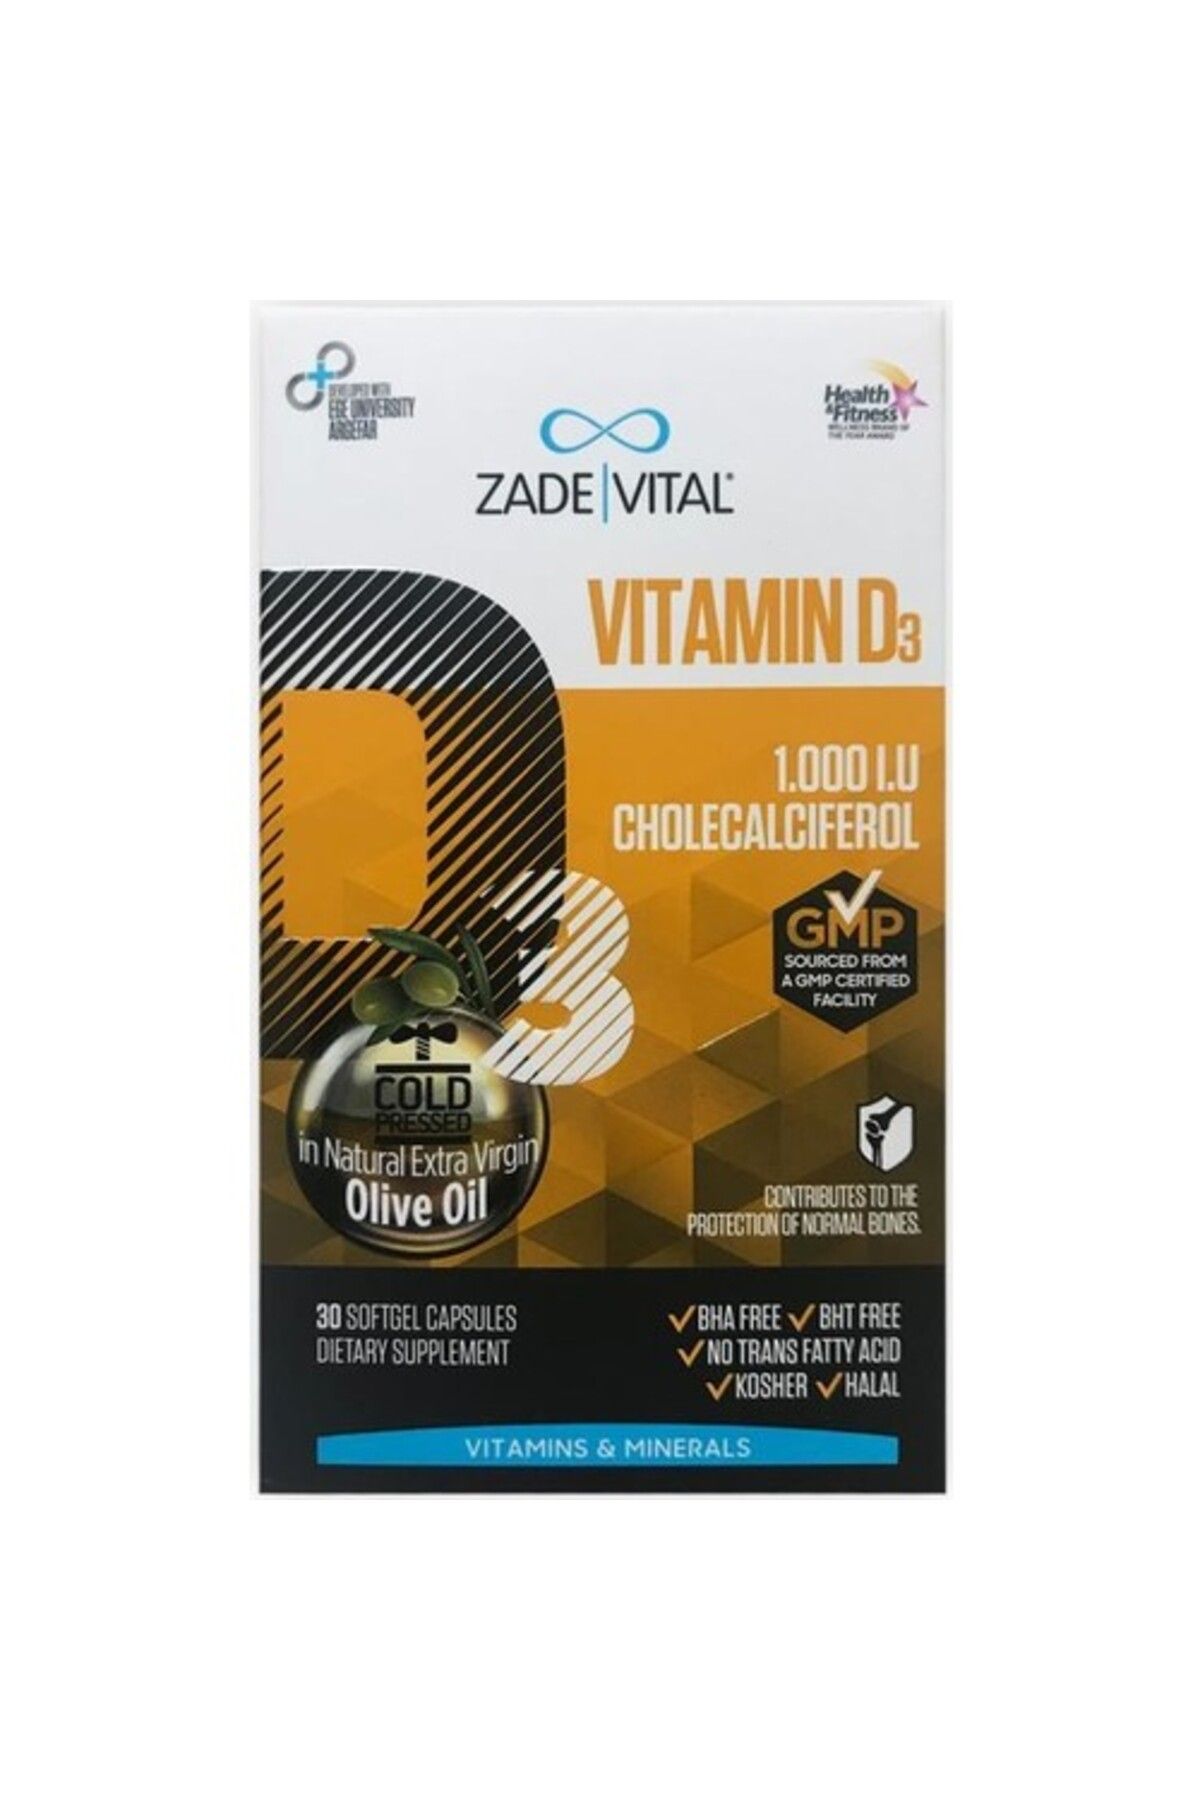 Zade Vital Vitamin D3 Kolekalsiferol 1000 Iu 30 Kapsül